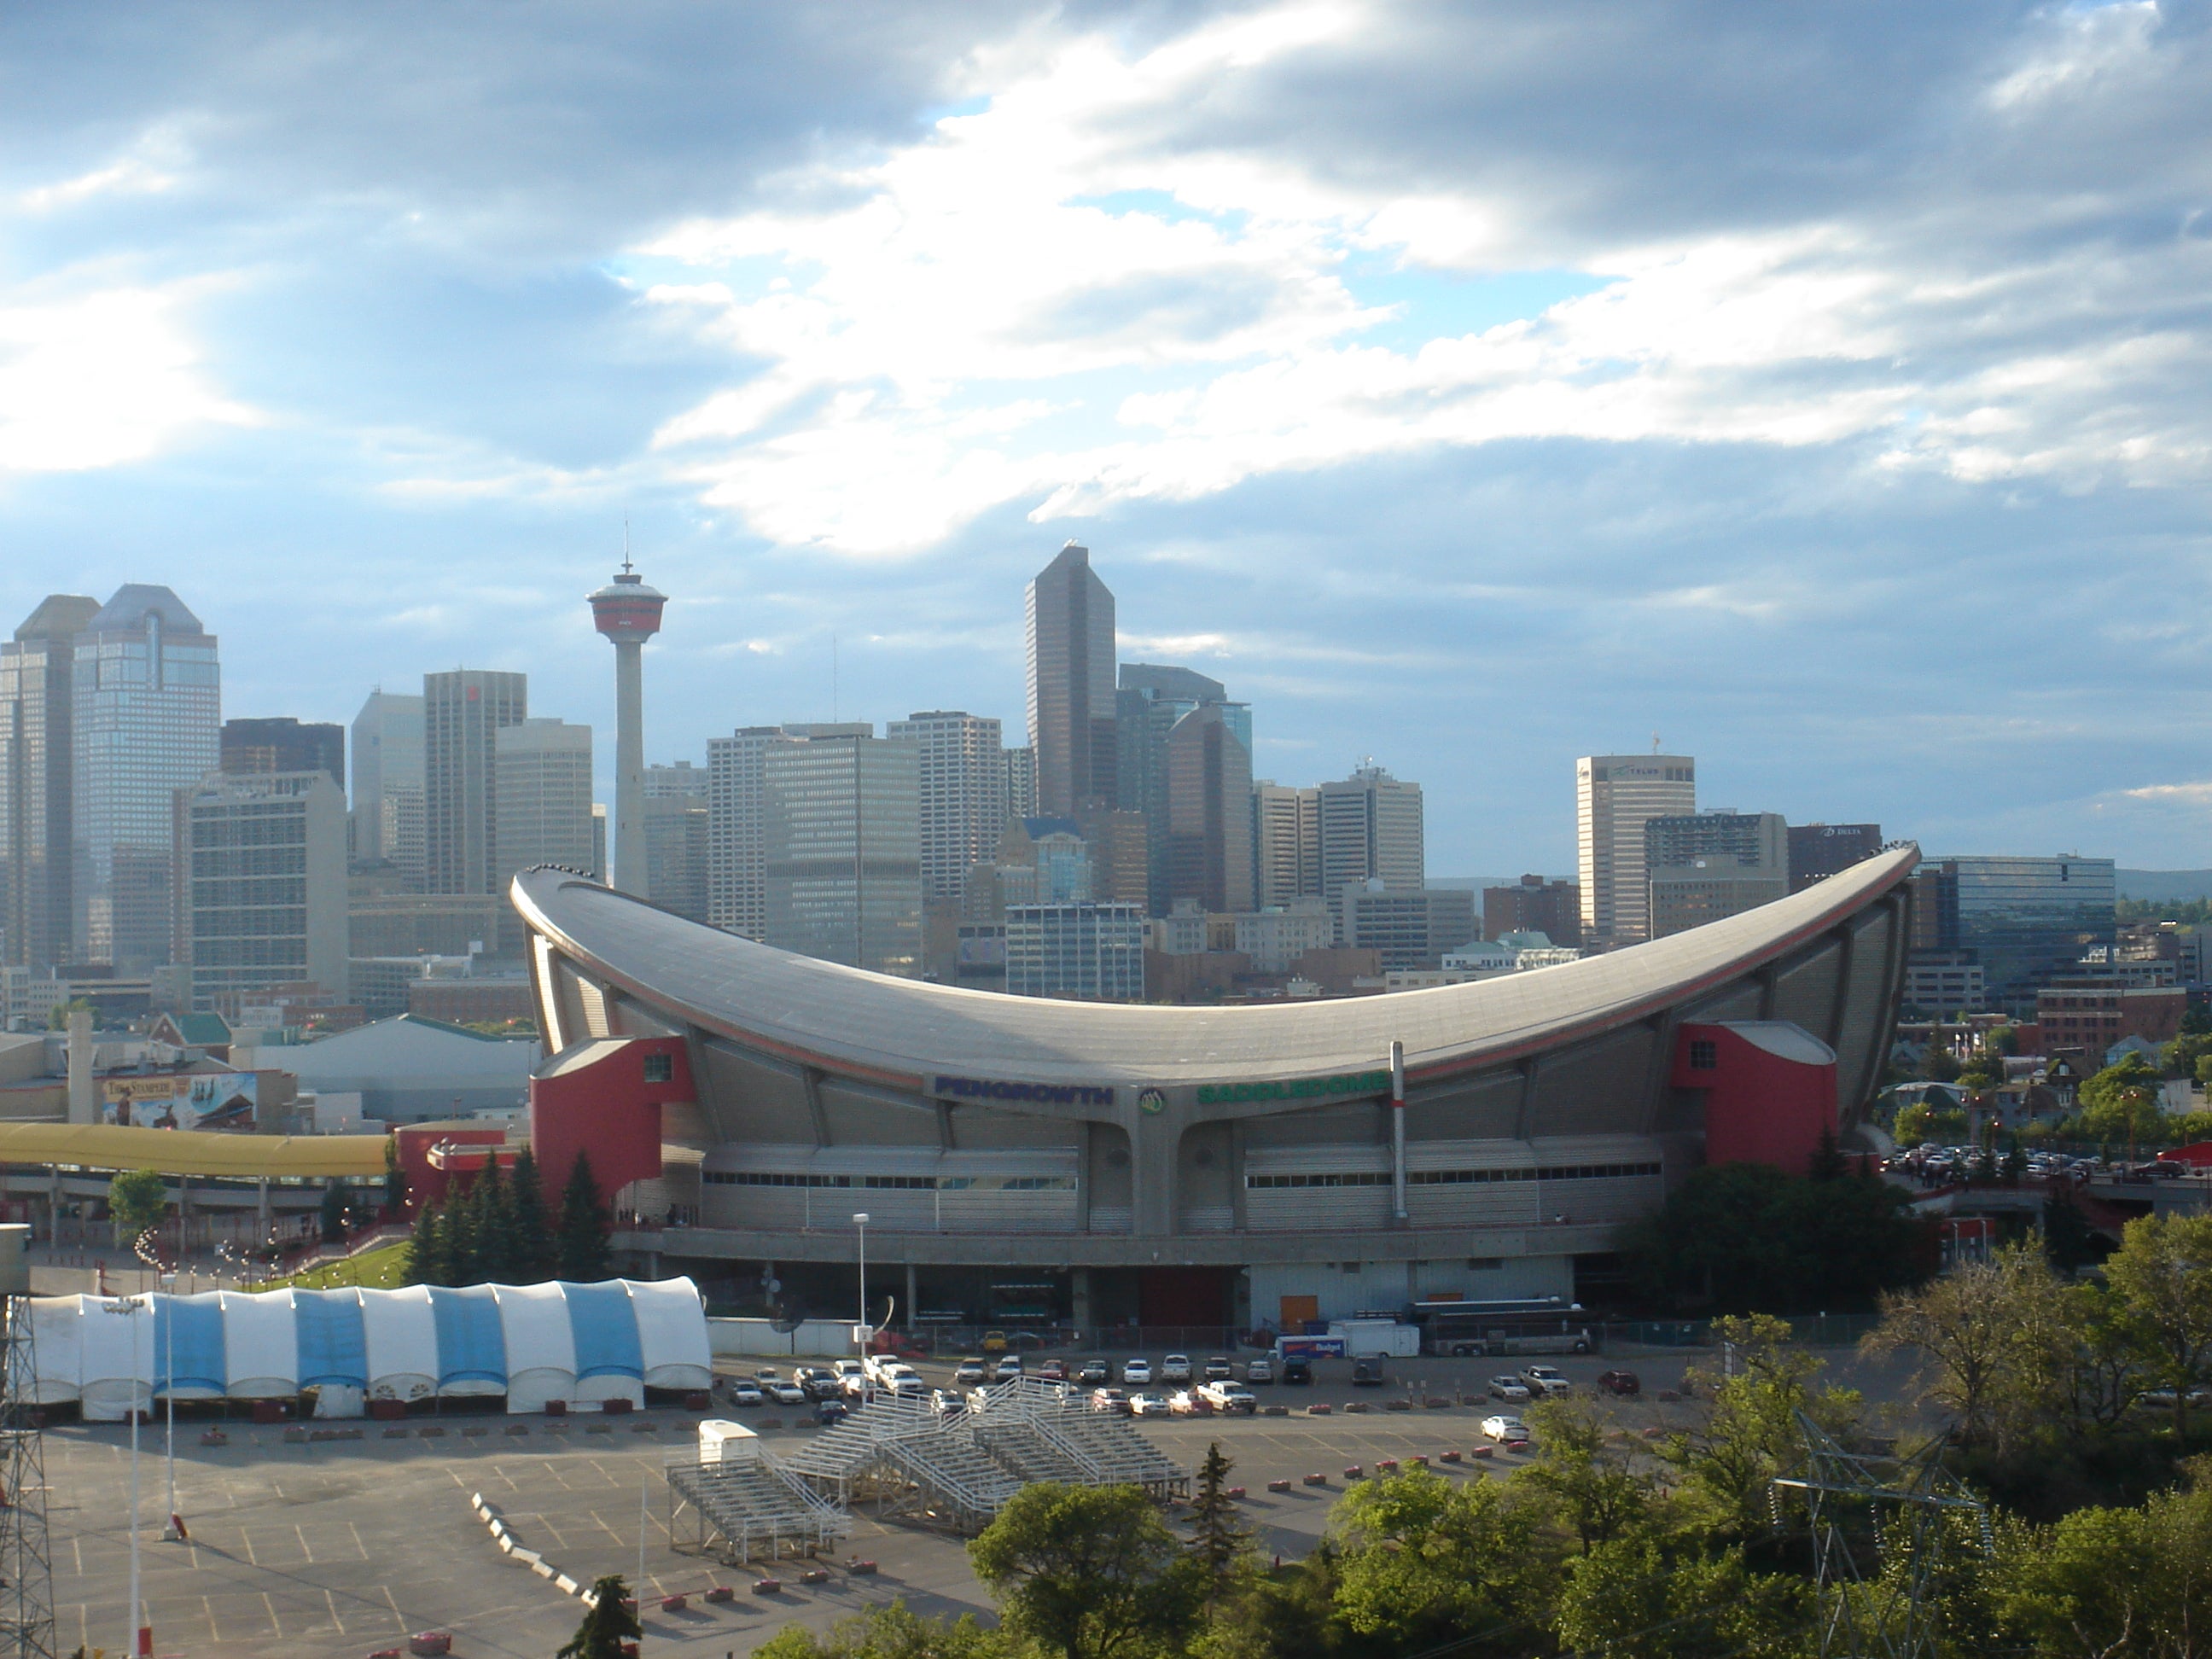 Calgary Saddledome Seating Chart